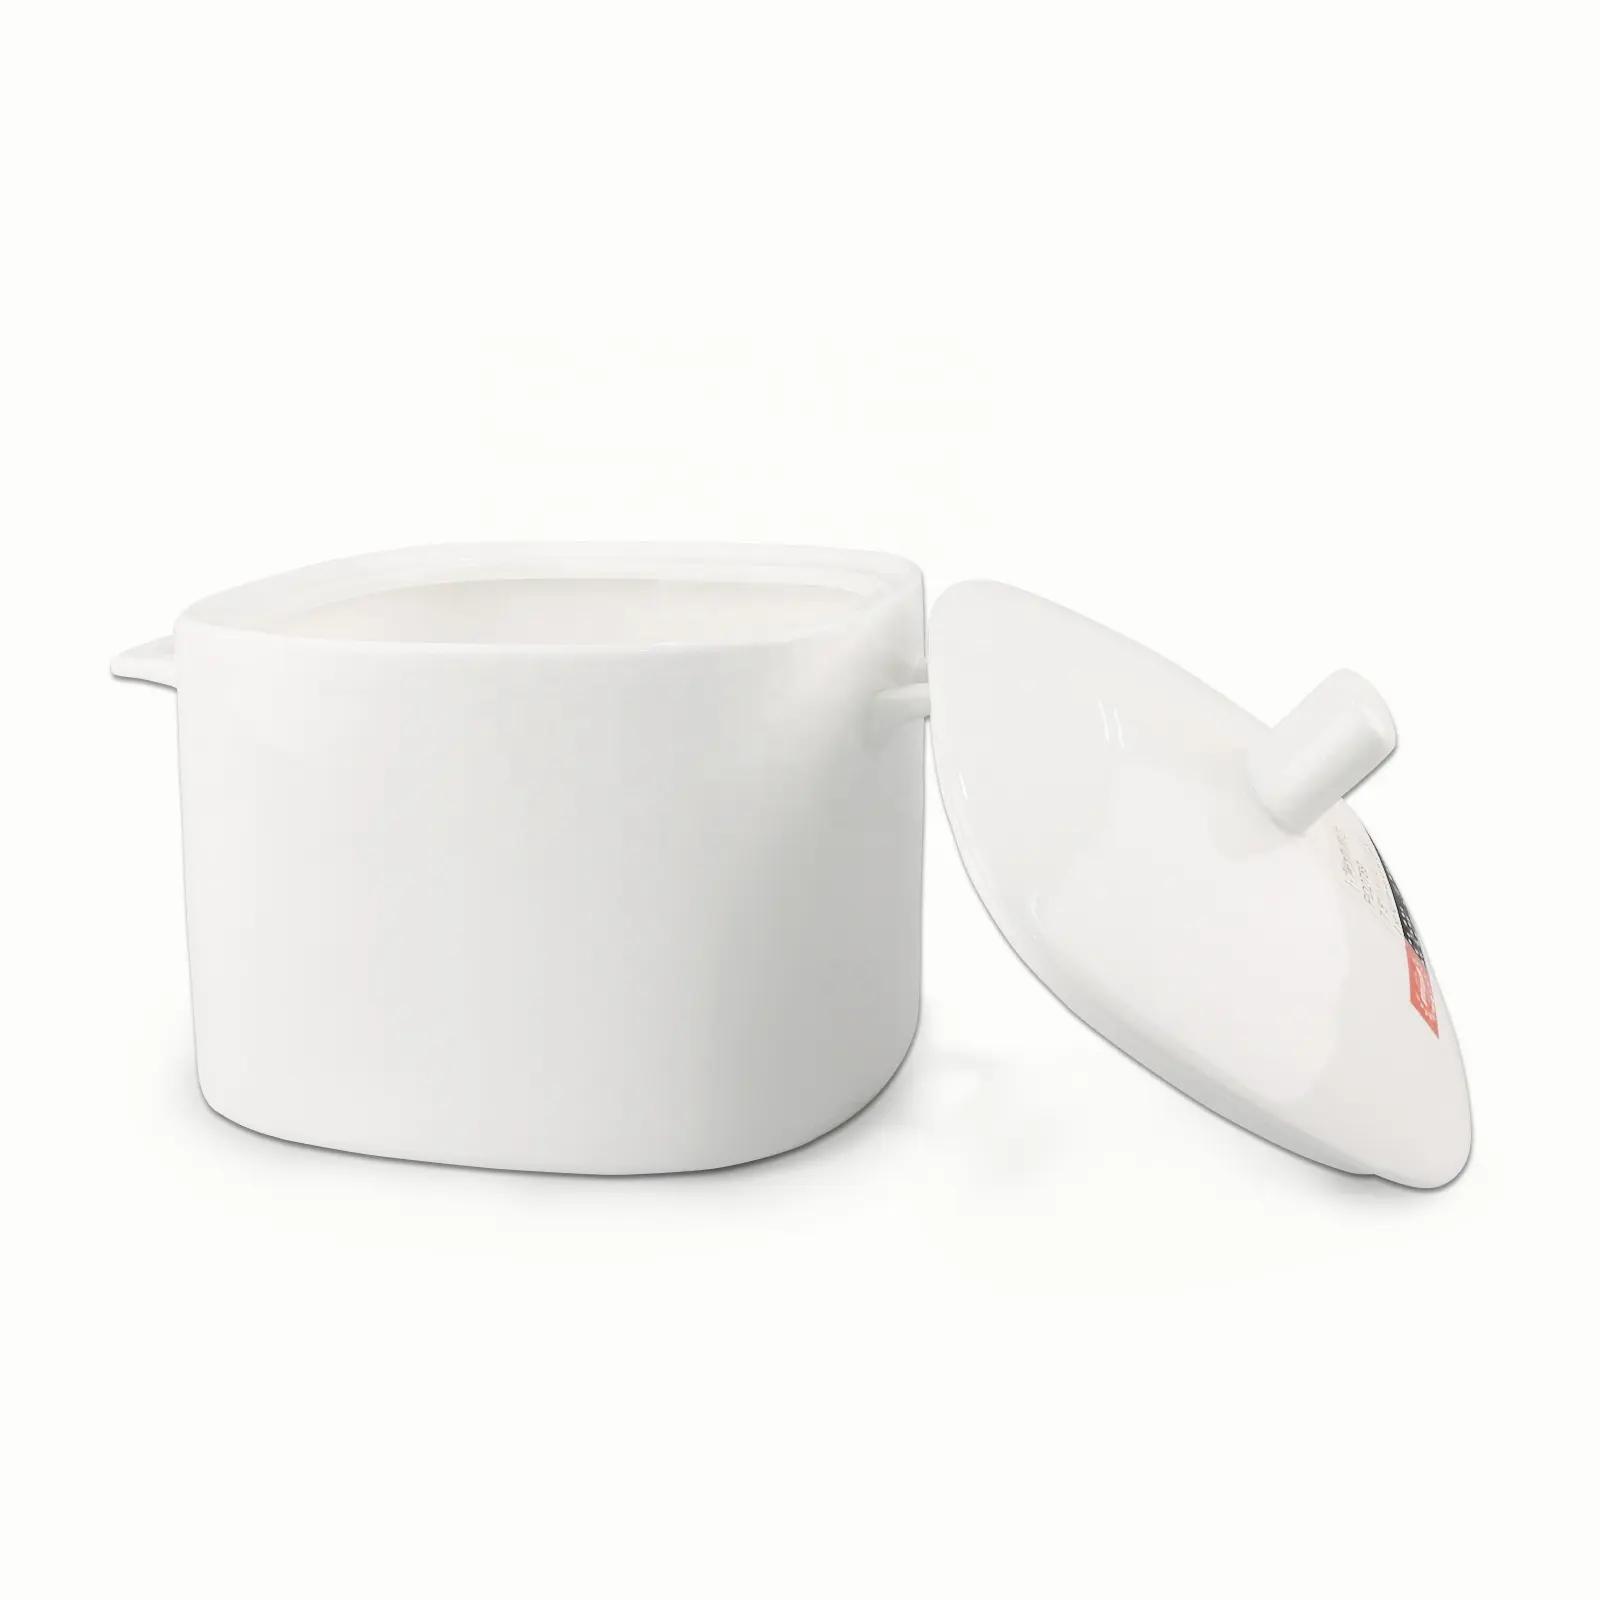 Zuppiera in ceramica bianca a forma quadrata di prezzo economico dell'hotel con coperchio ciotola di riso con mestolo per zuppiera promozionale set zuppiera